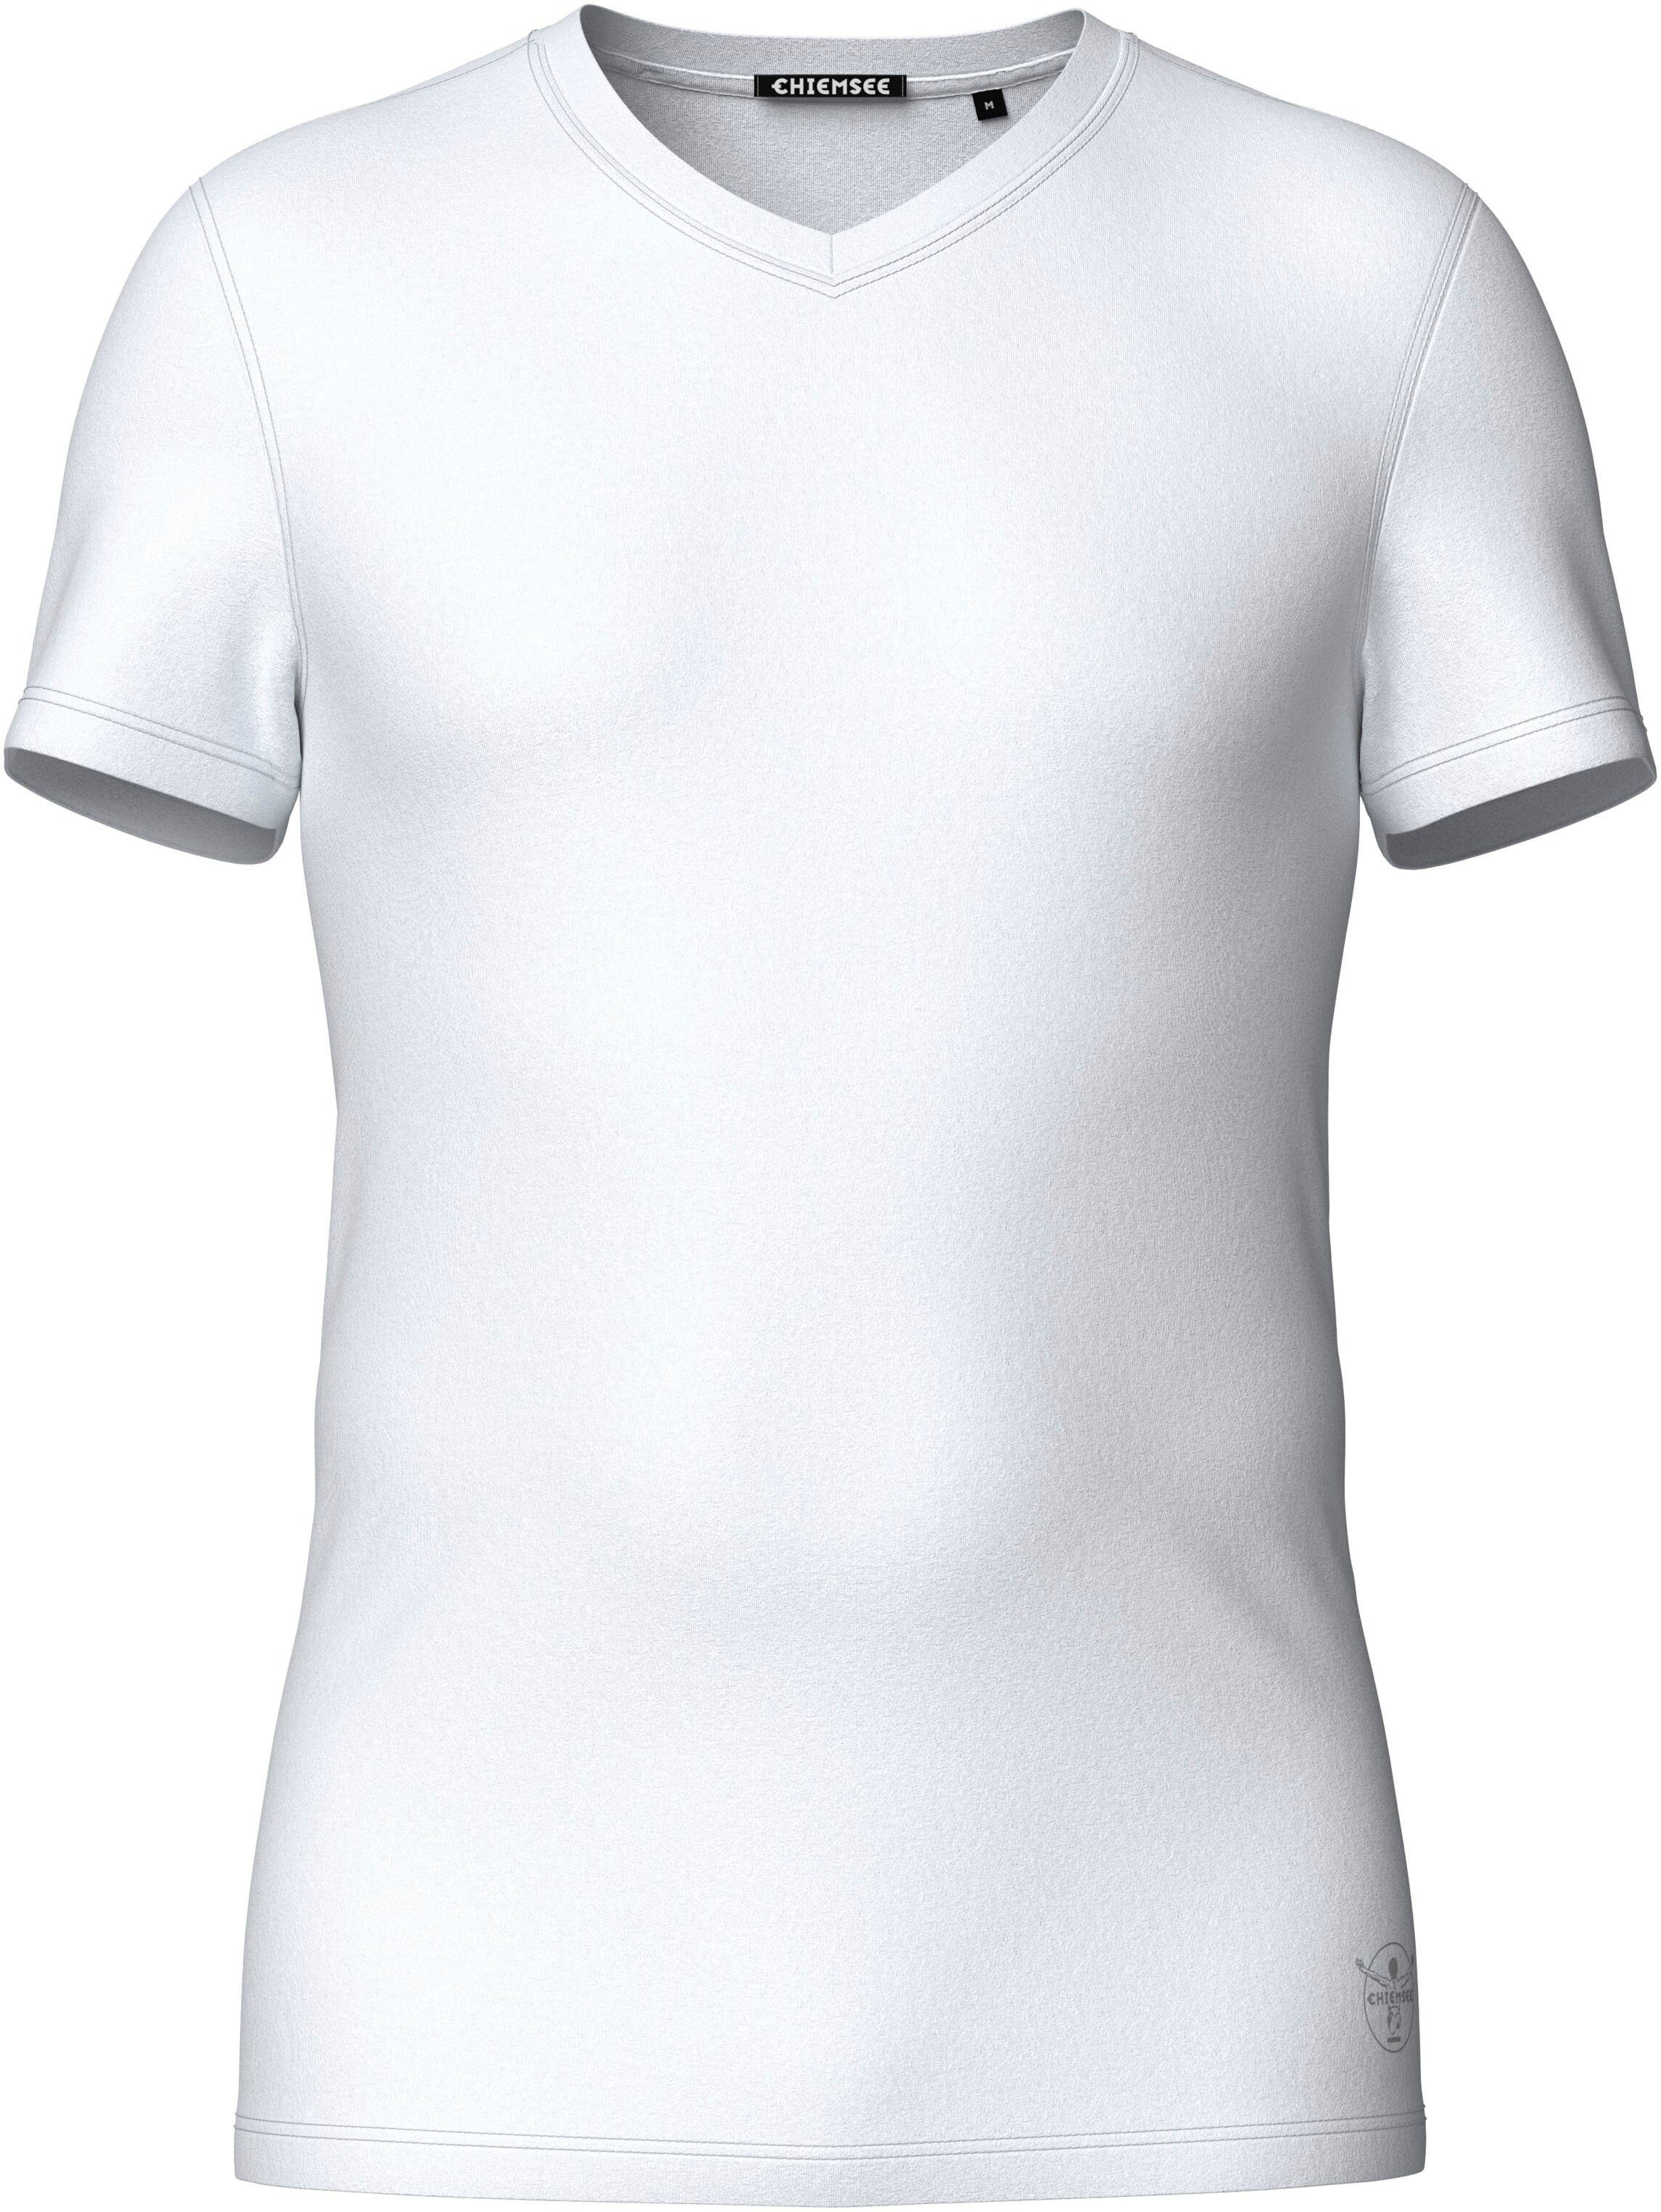 Chiemsee White Bright T-Shirt